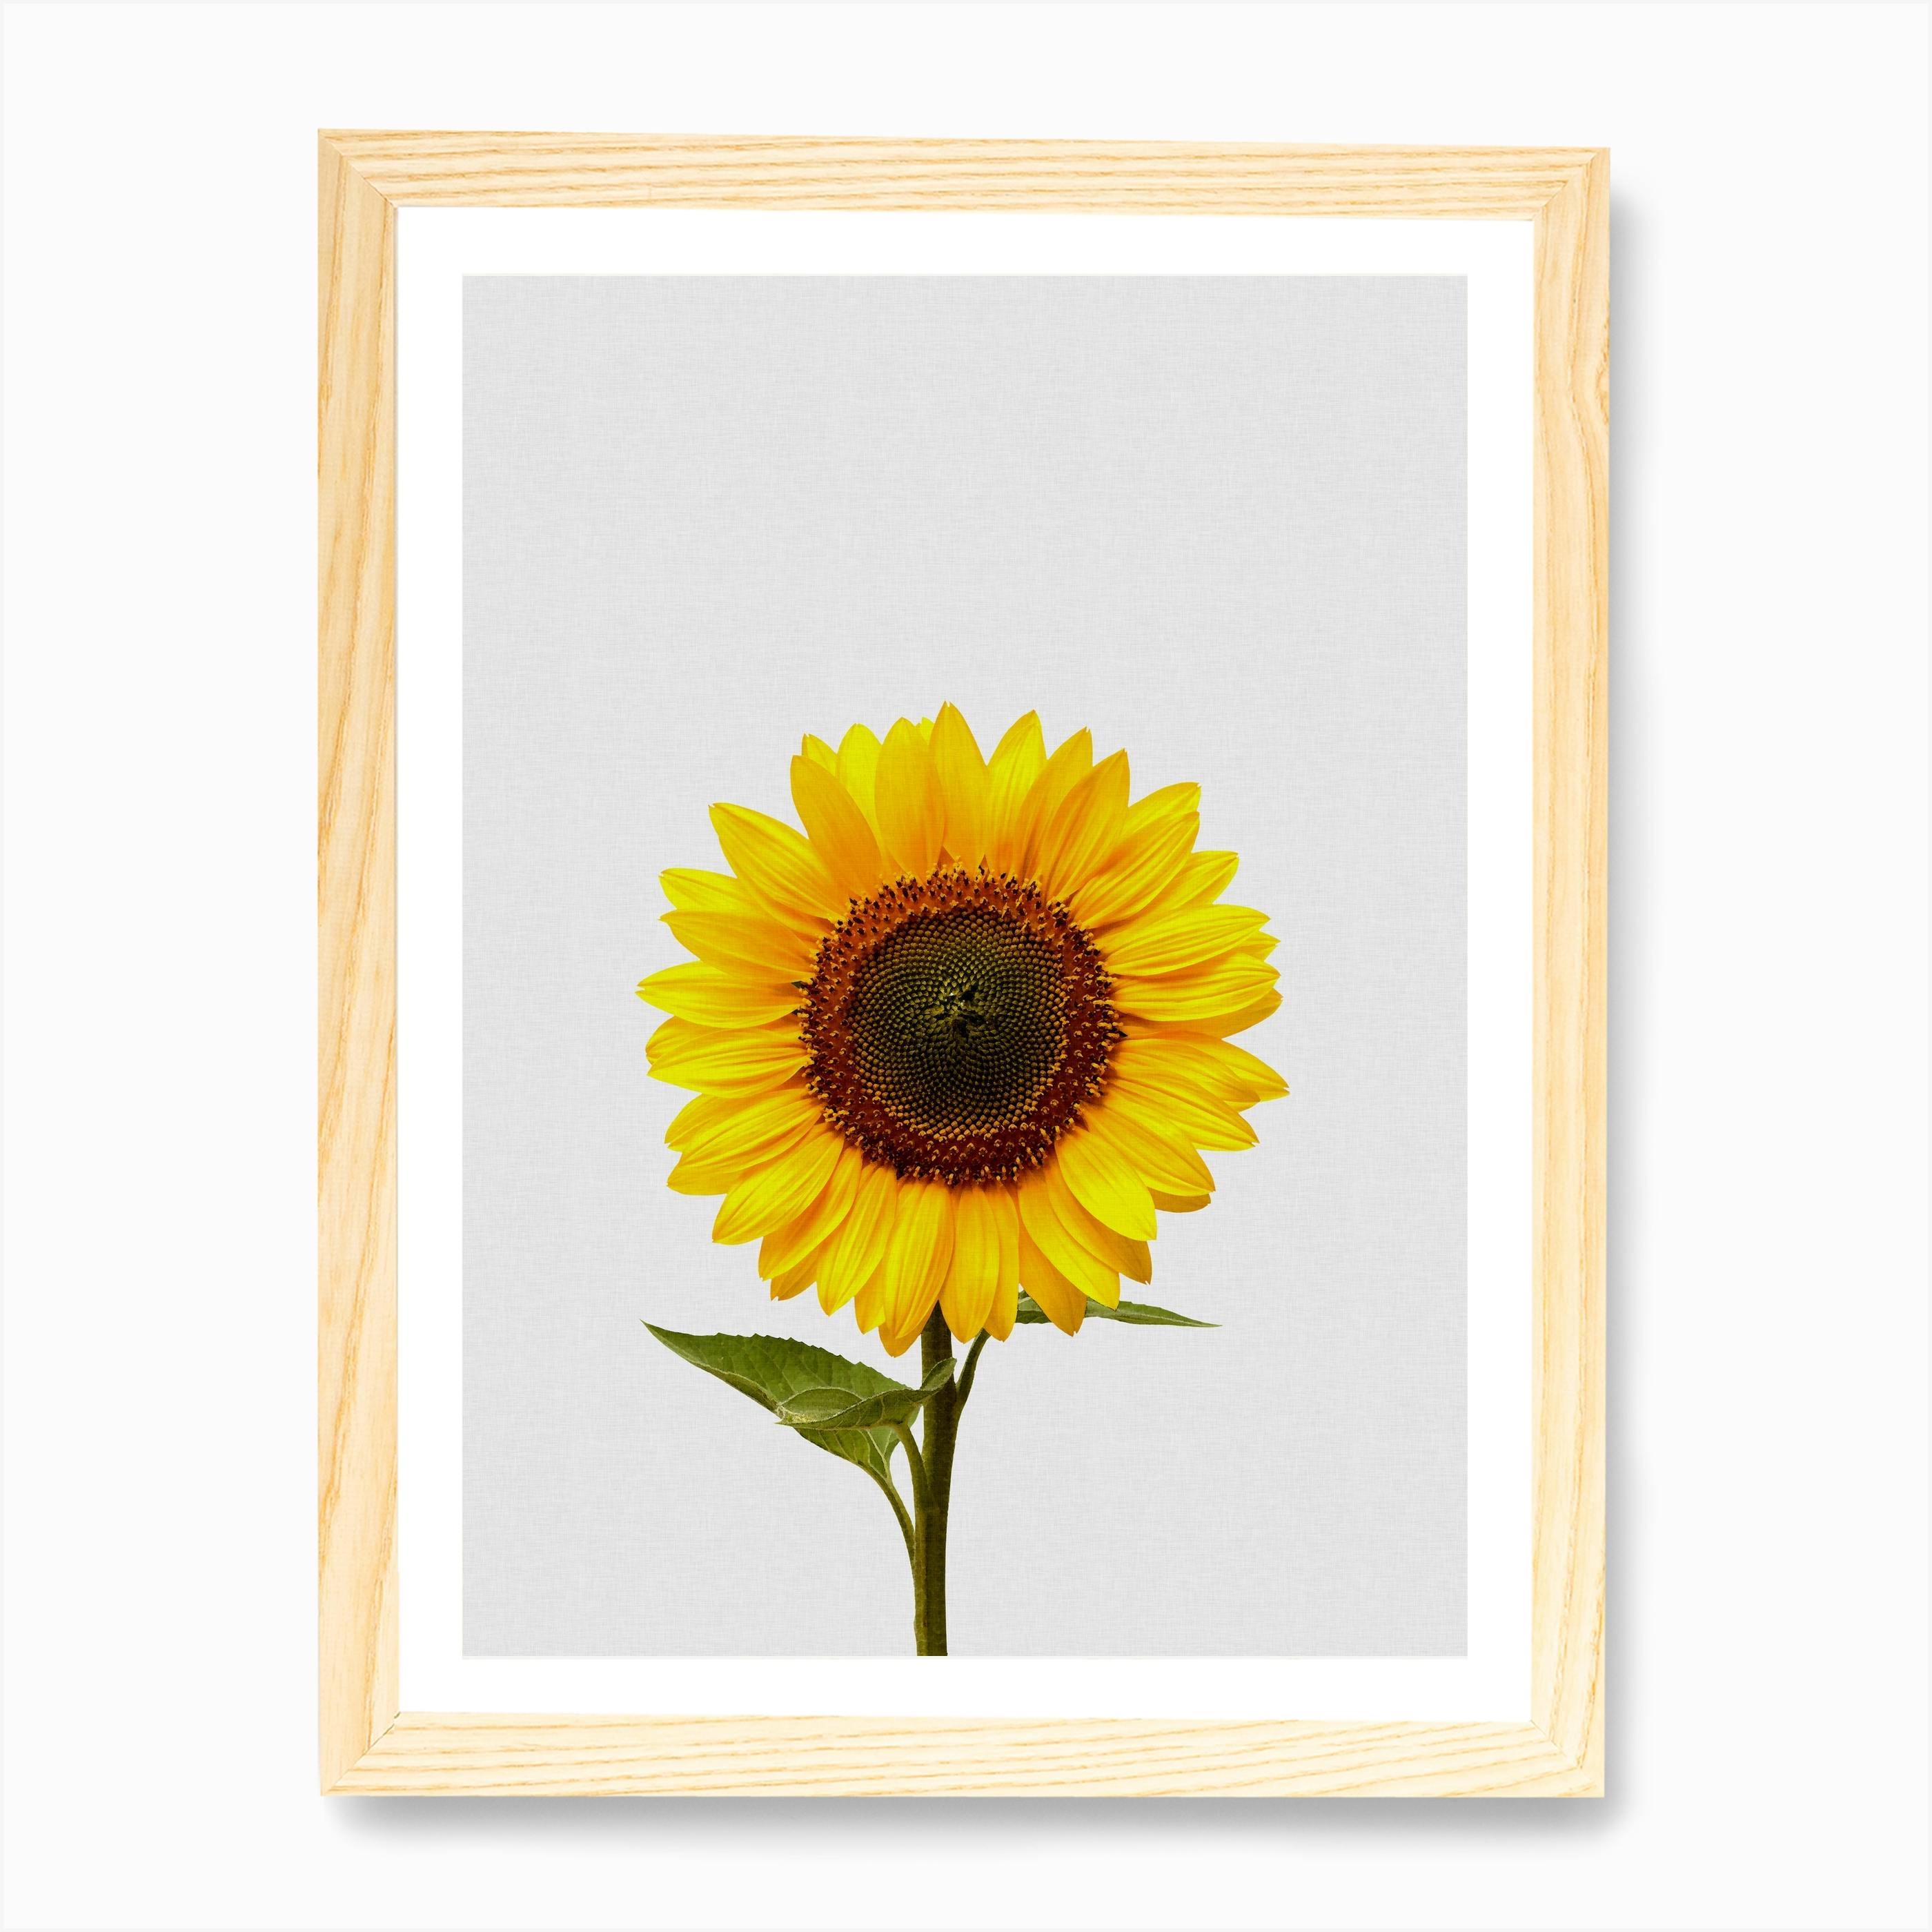 Sunflower Art Deals, 59% OFF | www.pegasusaerogroup.com